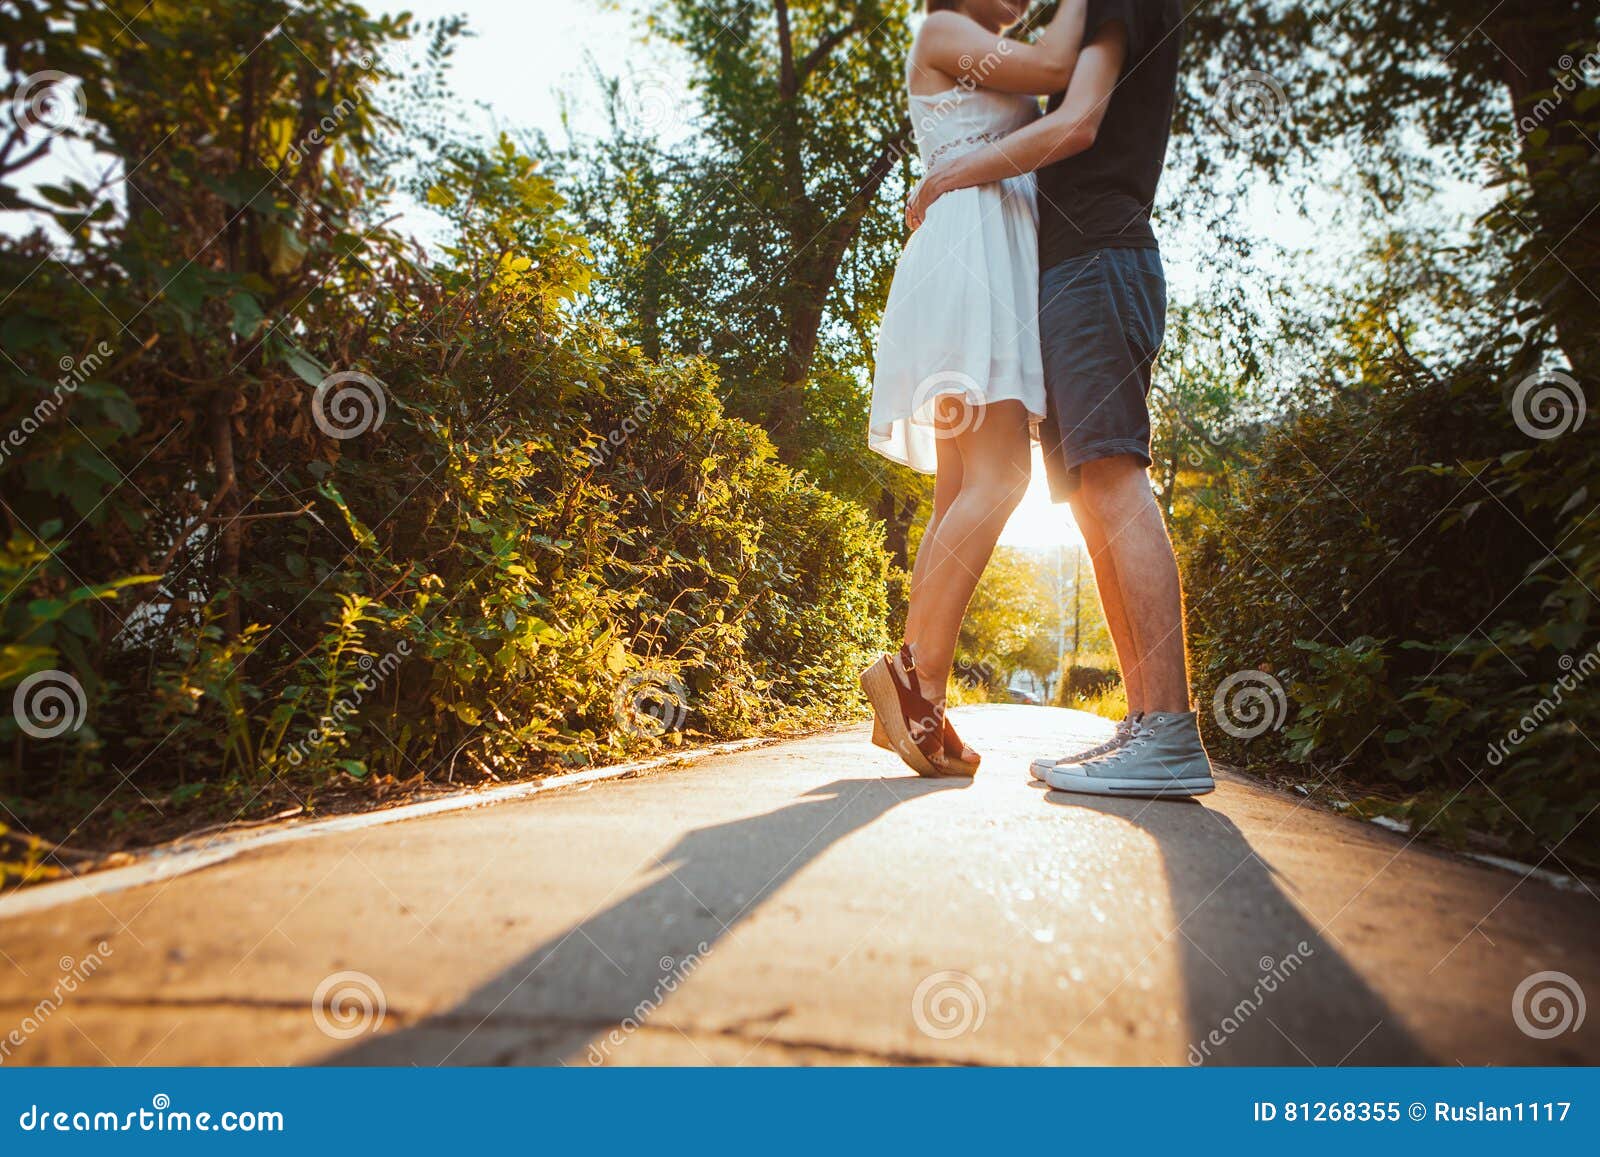 Девушка обнимает ноги